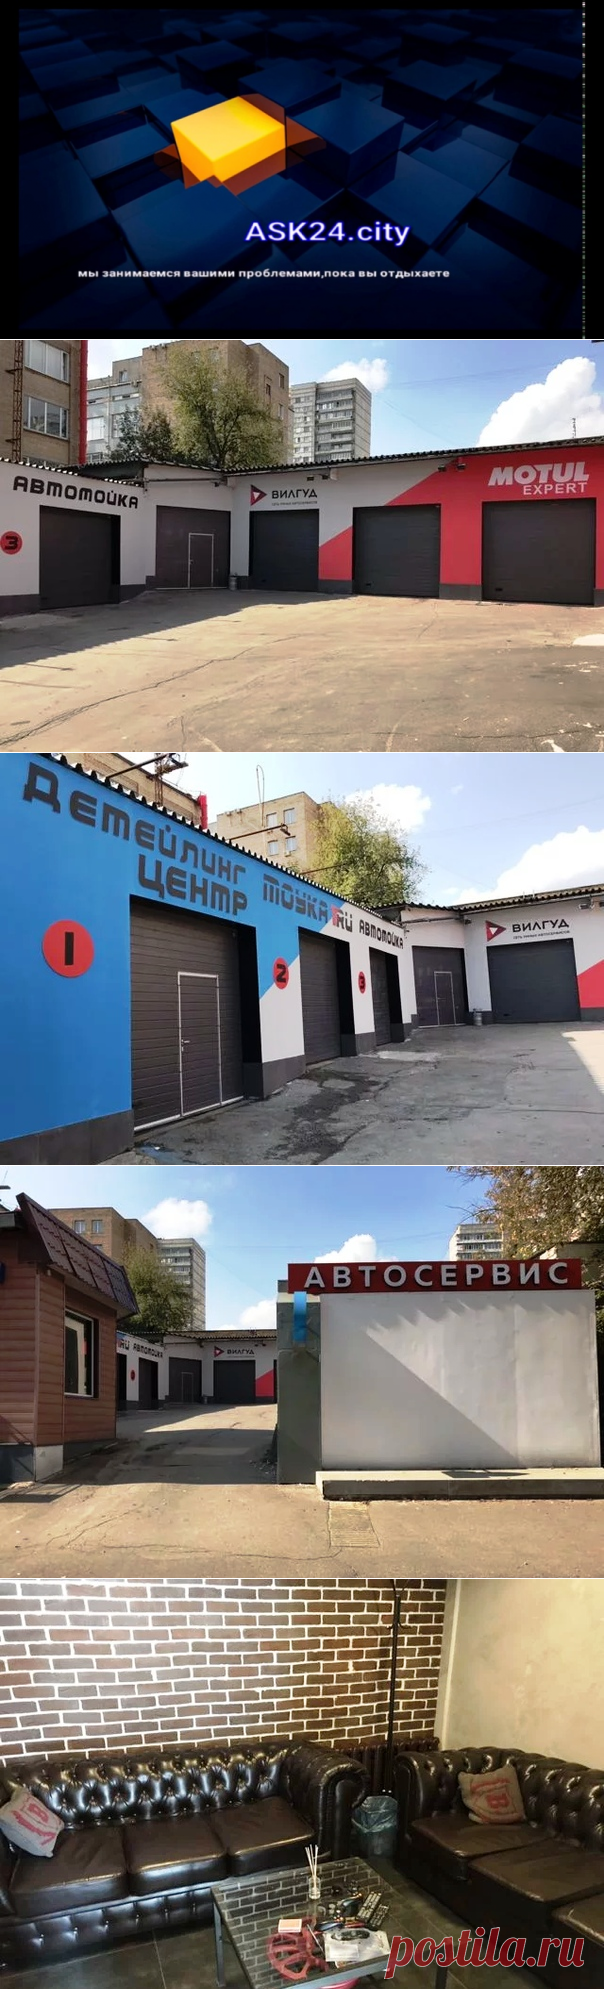 Ask24 агрегатор недвижимости Москвы